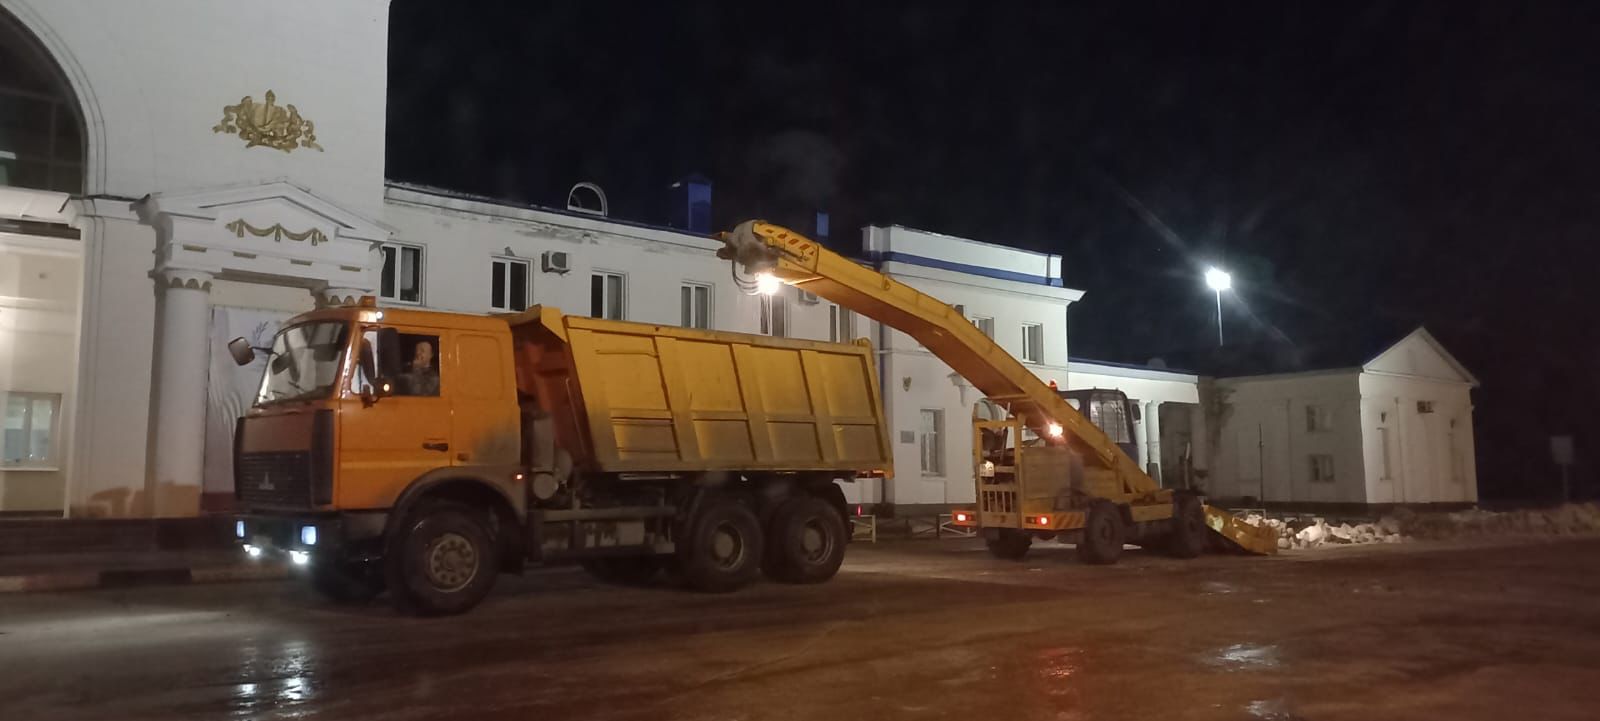 За сутки ульяновские дорожники использовали 165 тонн противогололёдных материалов.